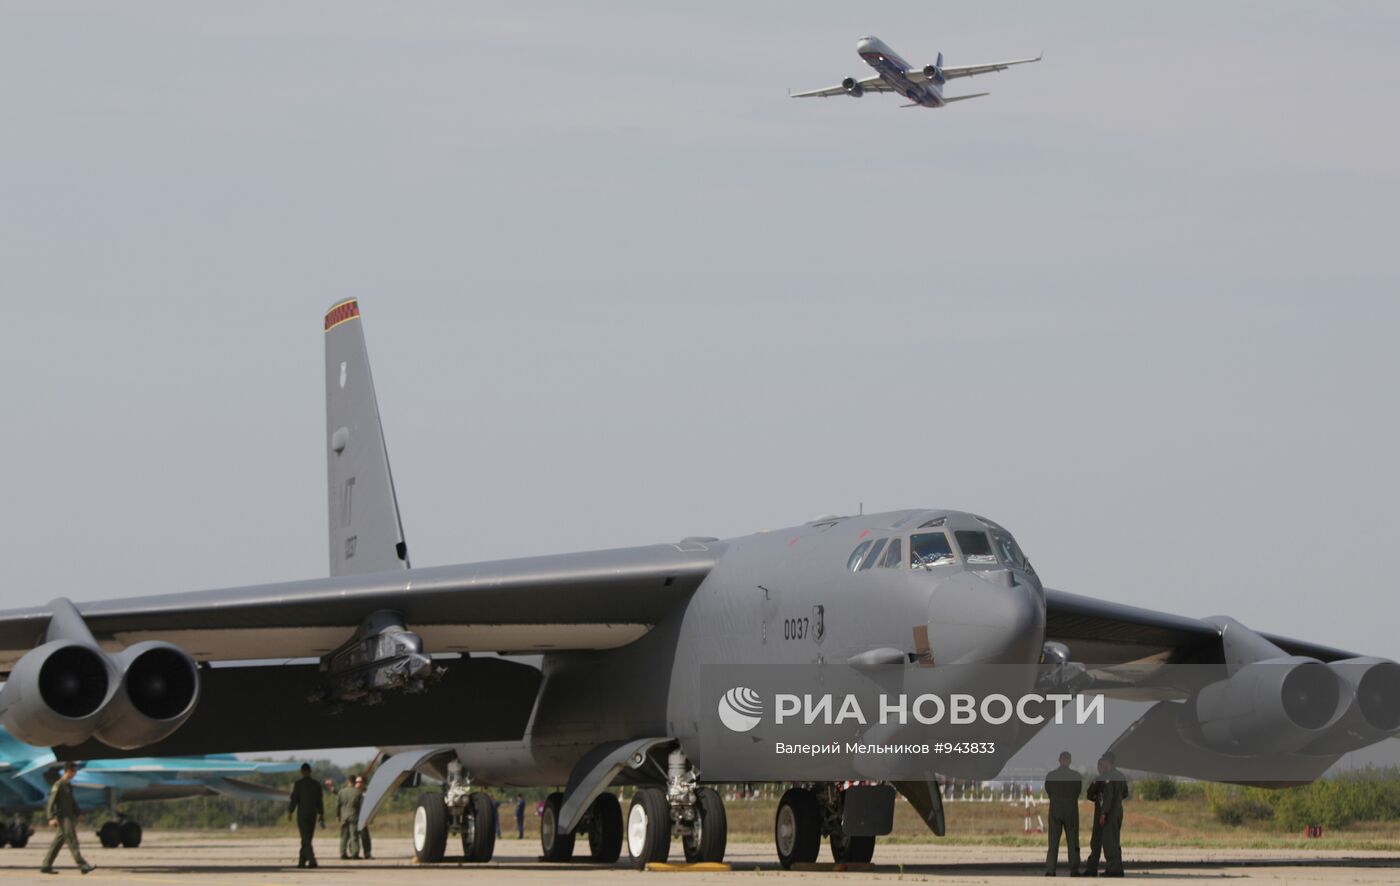 Прилет бомбардировщика Б-52 на авиасалон "МАКС-2011"